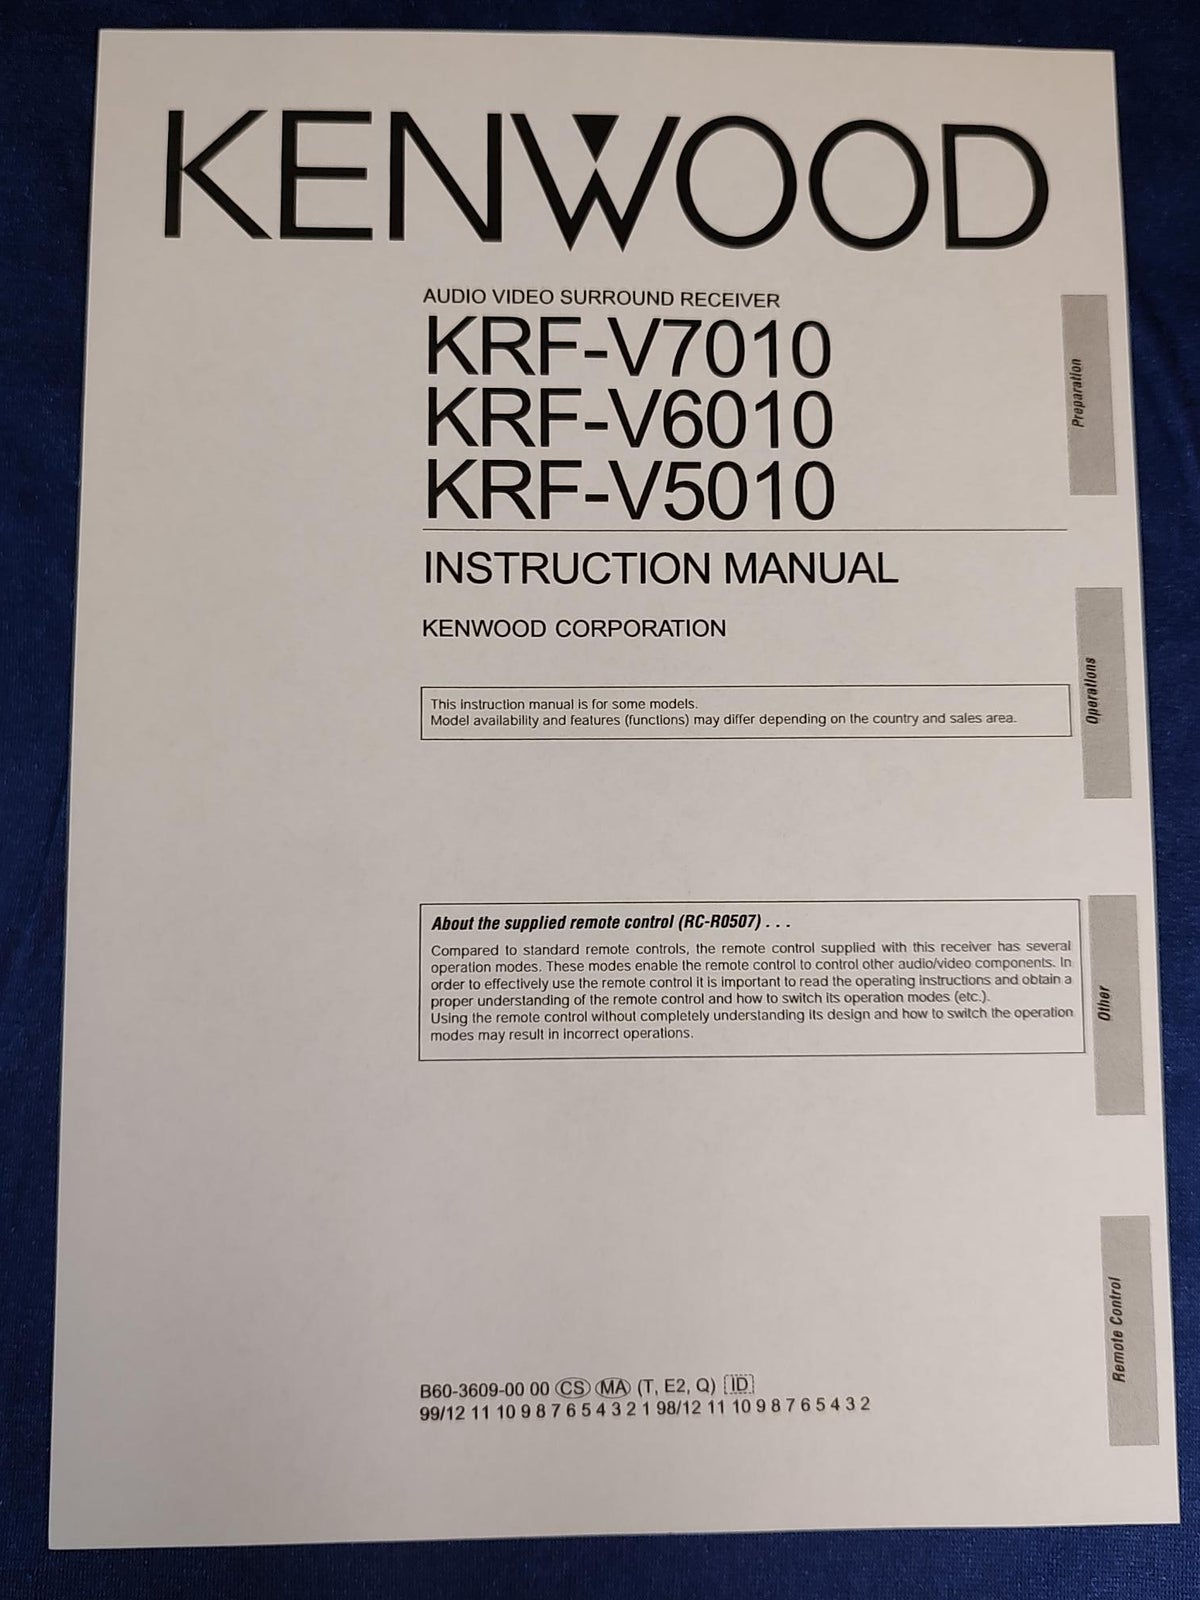 Kenwood, KRF-V6010, 5.1 kanaler